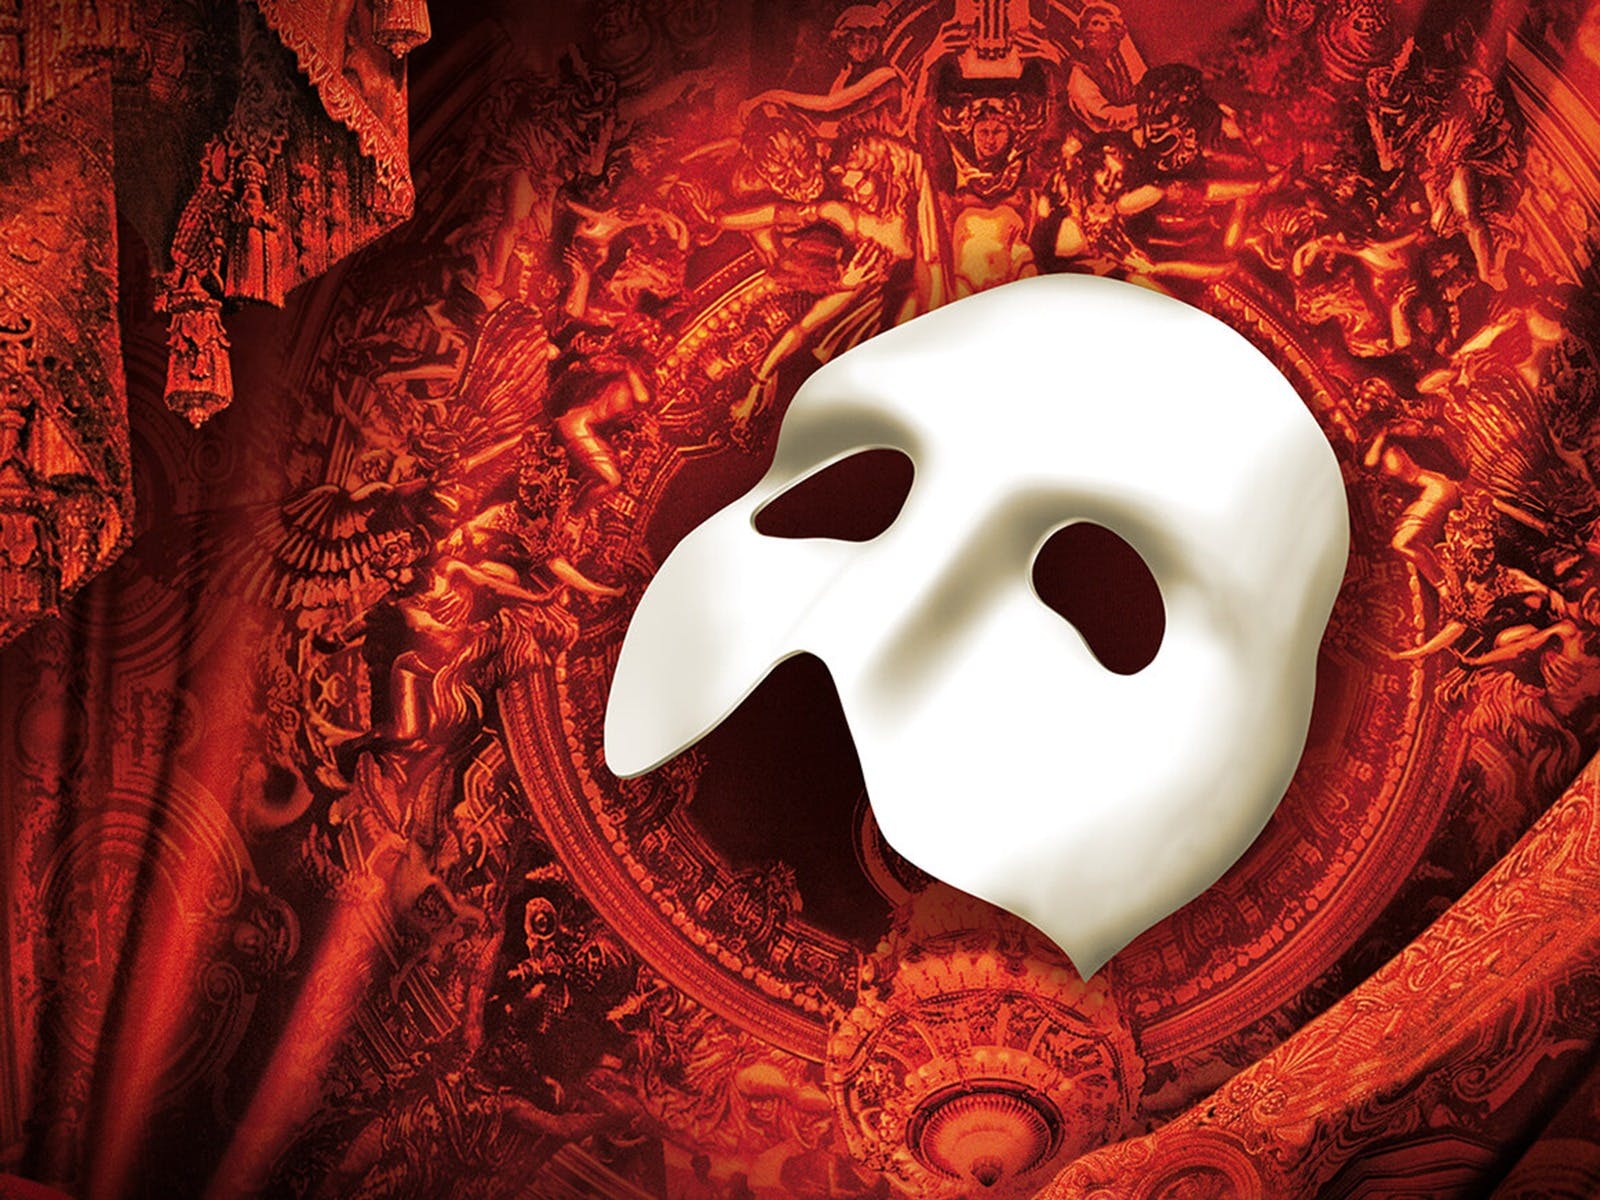 phantom of the opera cast 2022